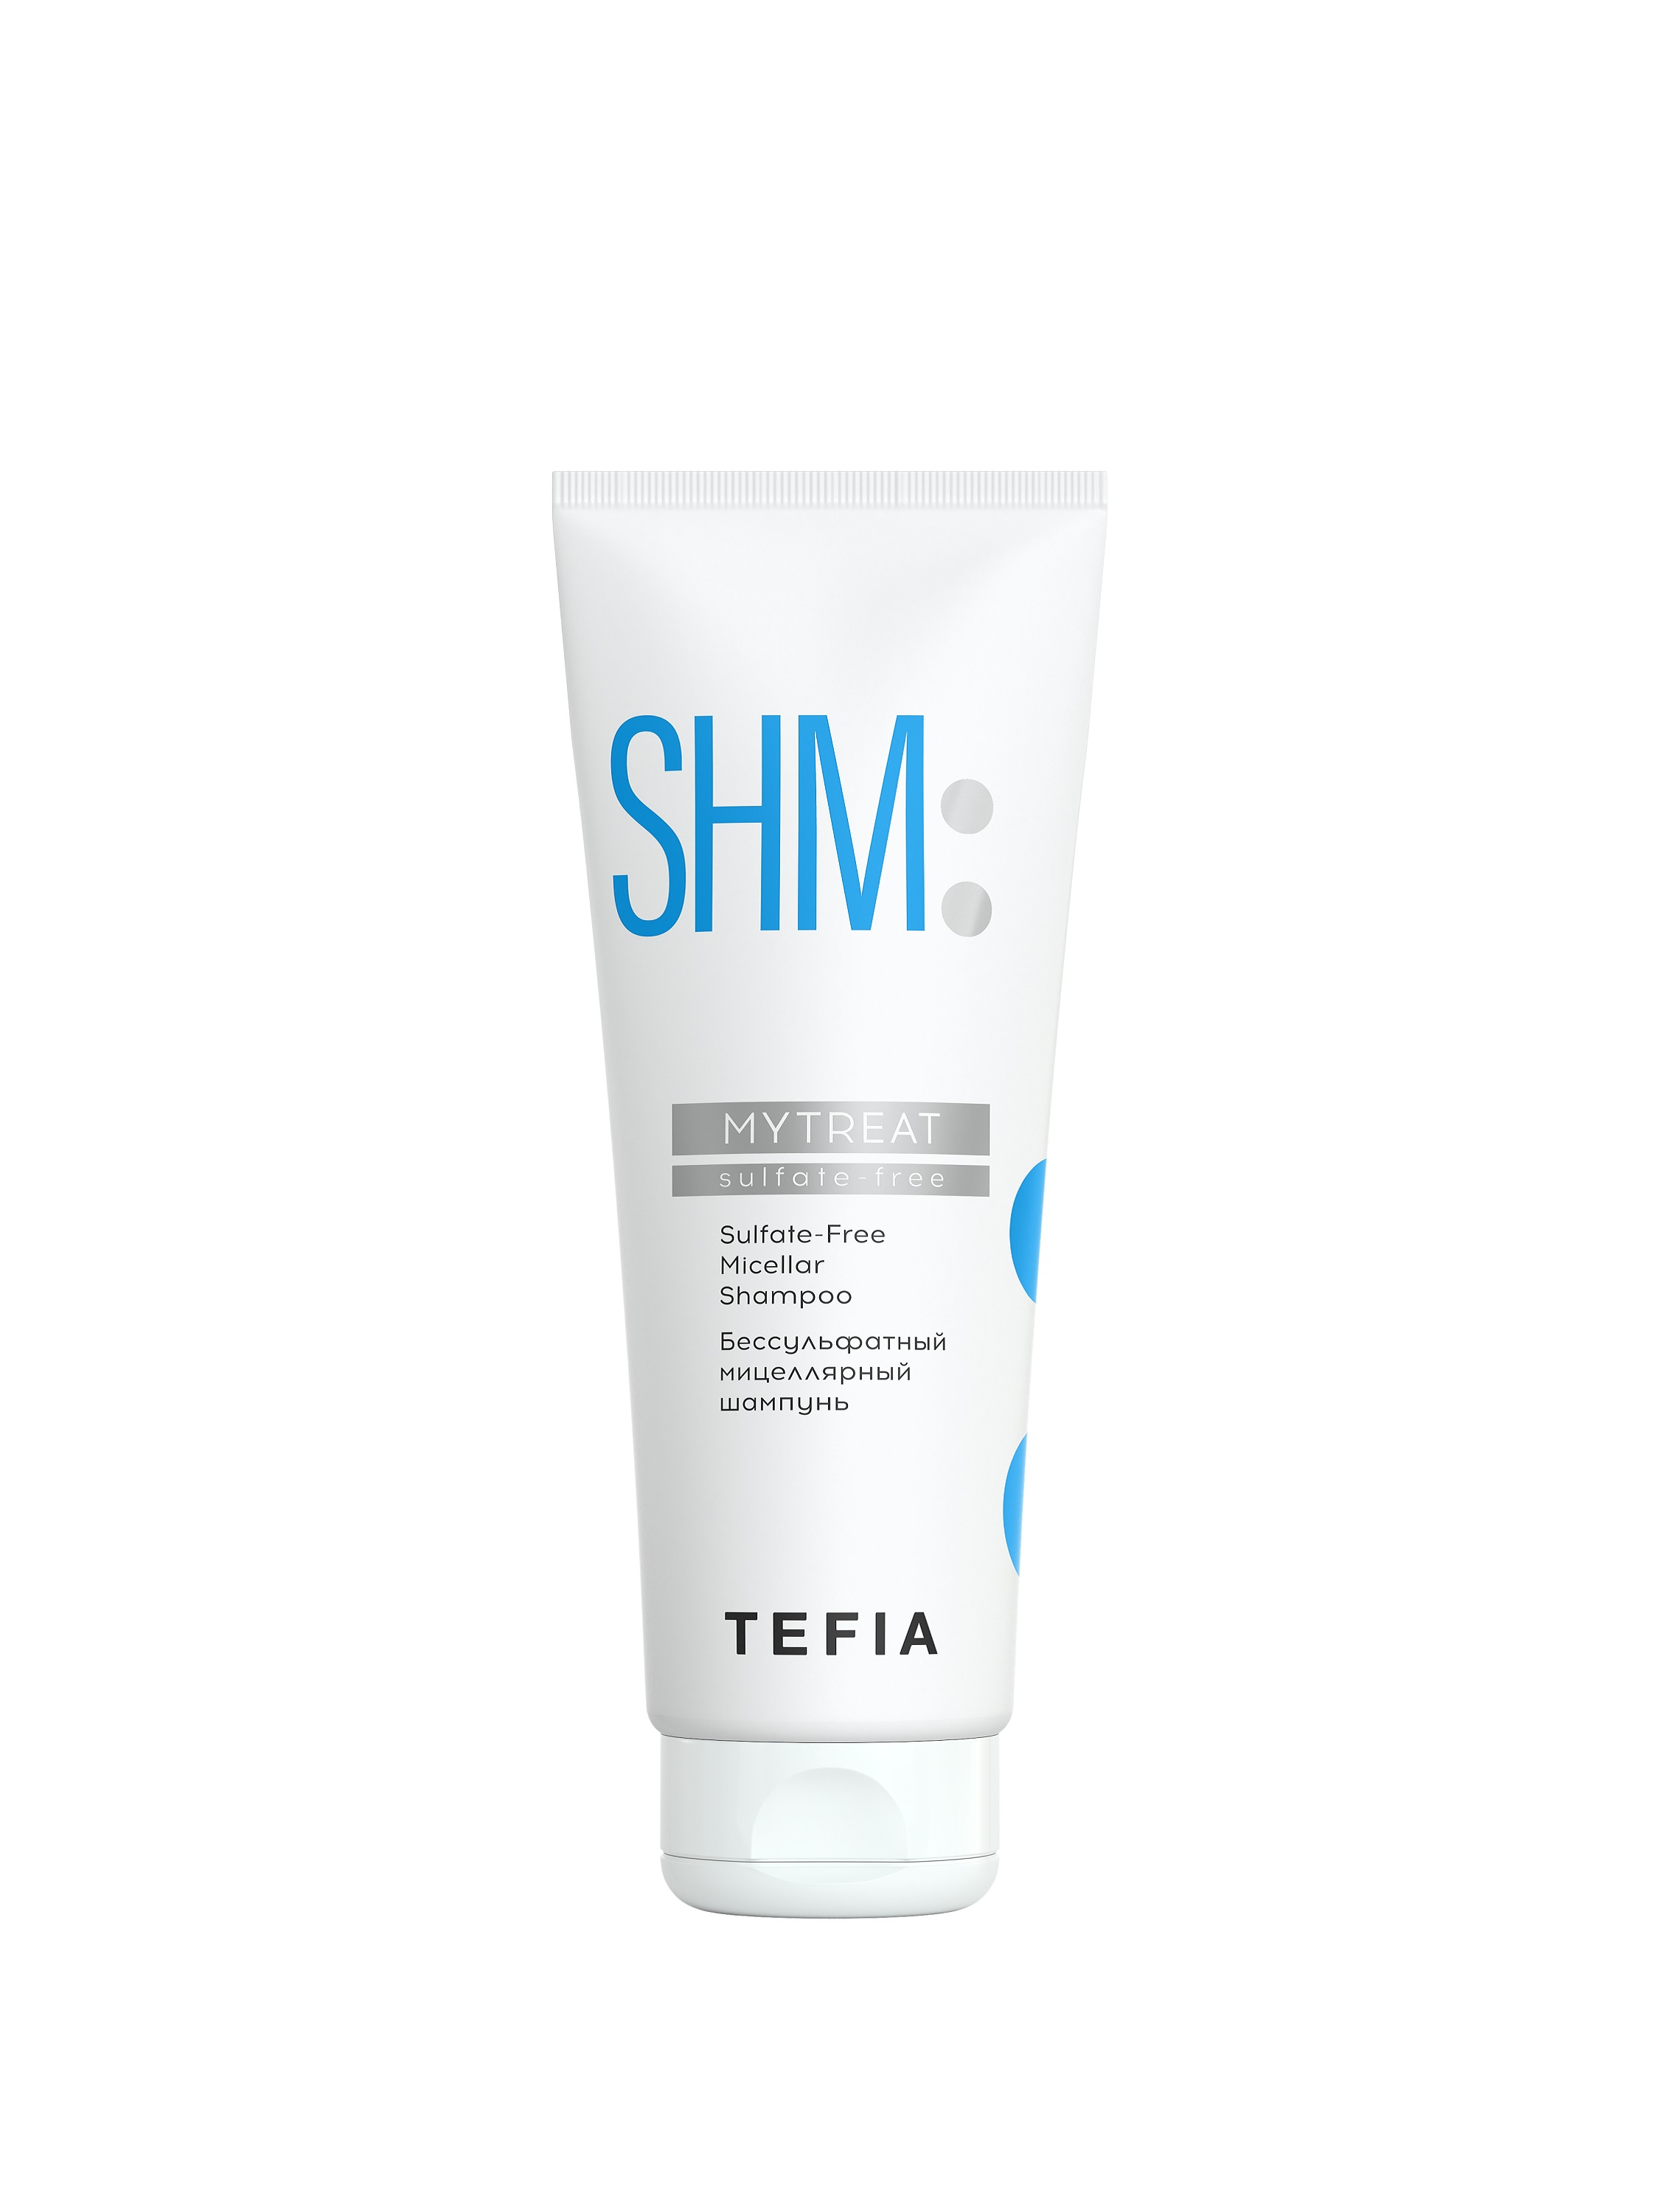 Купить Шампунь TEFIA бессульфатный мицеллярный для волос профессиональный 250мл, Линия MYTREAT, Sulfate-Free Micellar Shampoo, 250